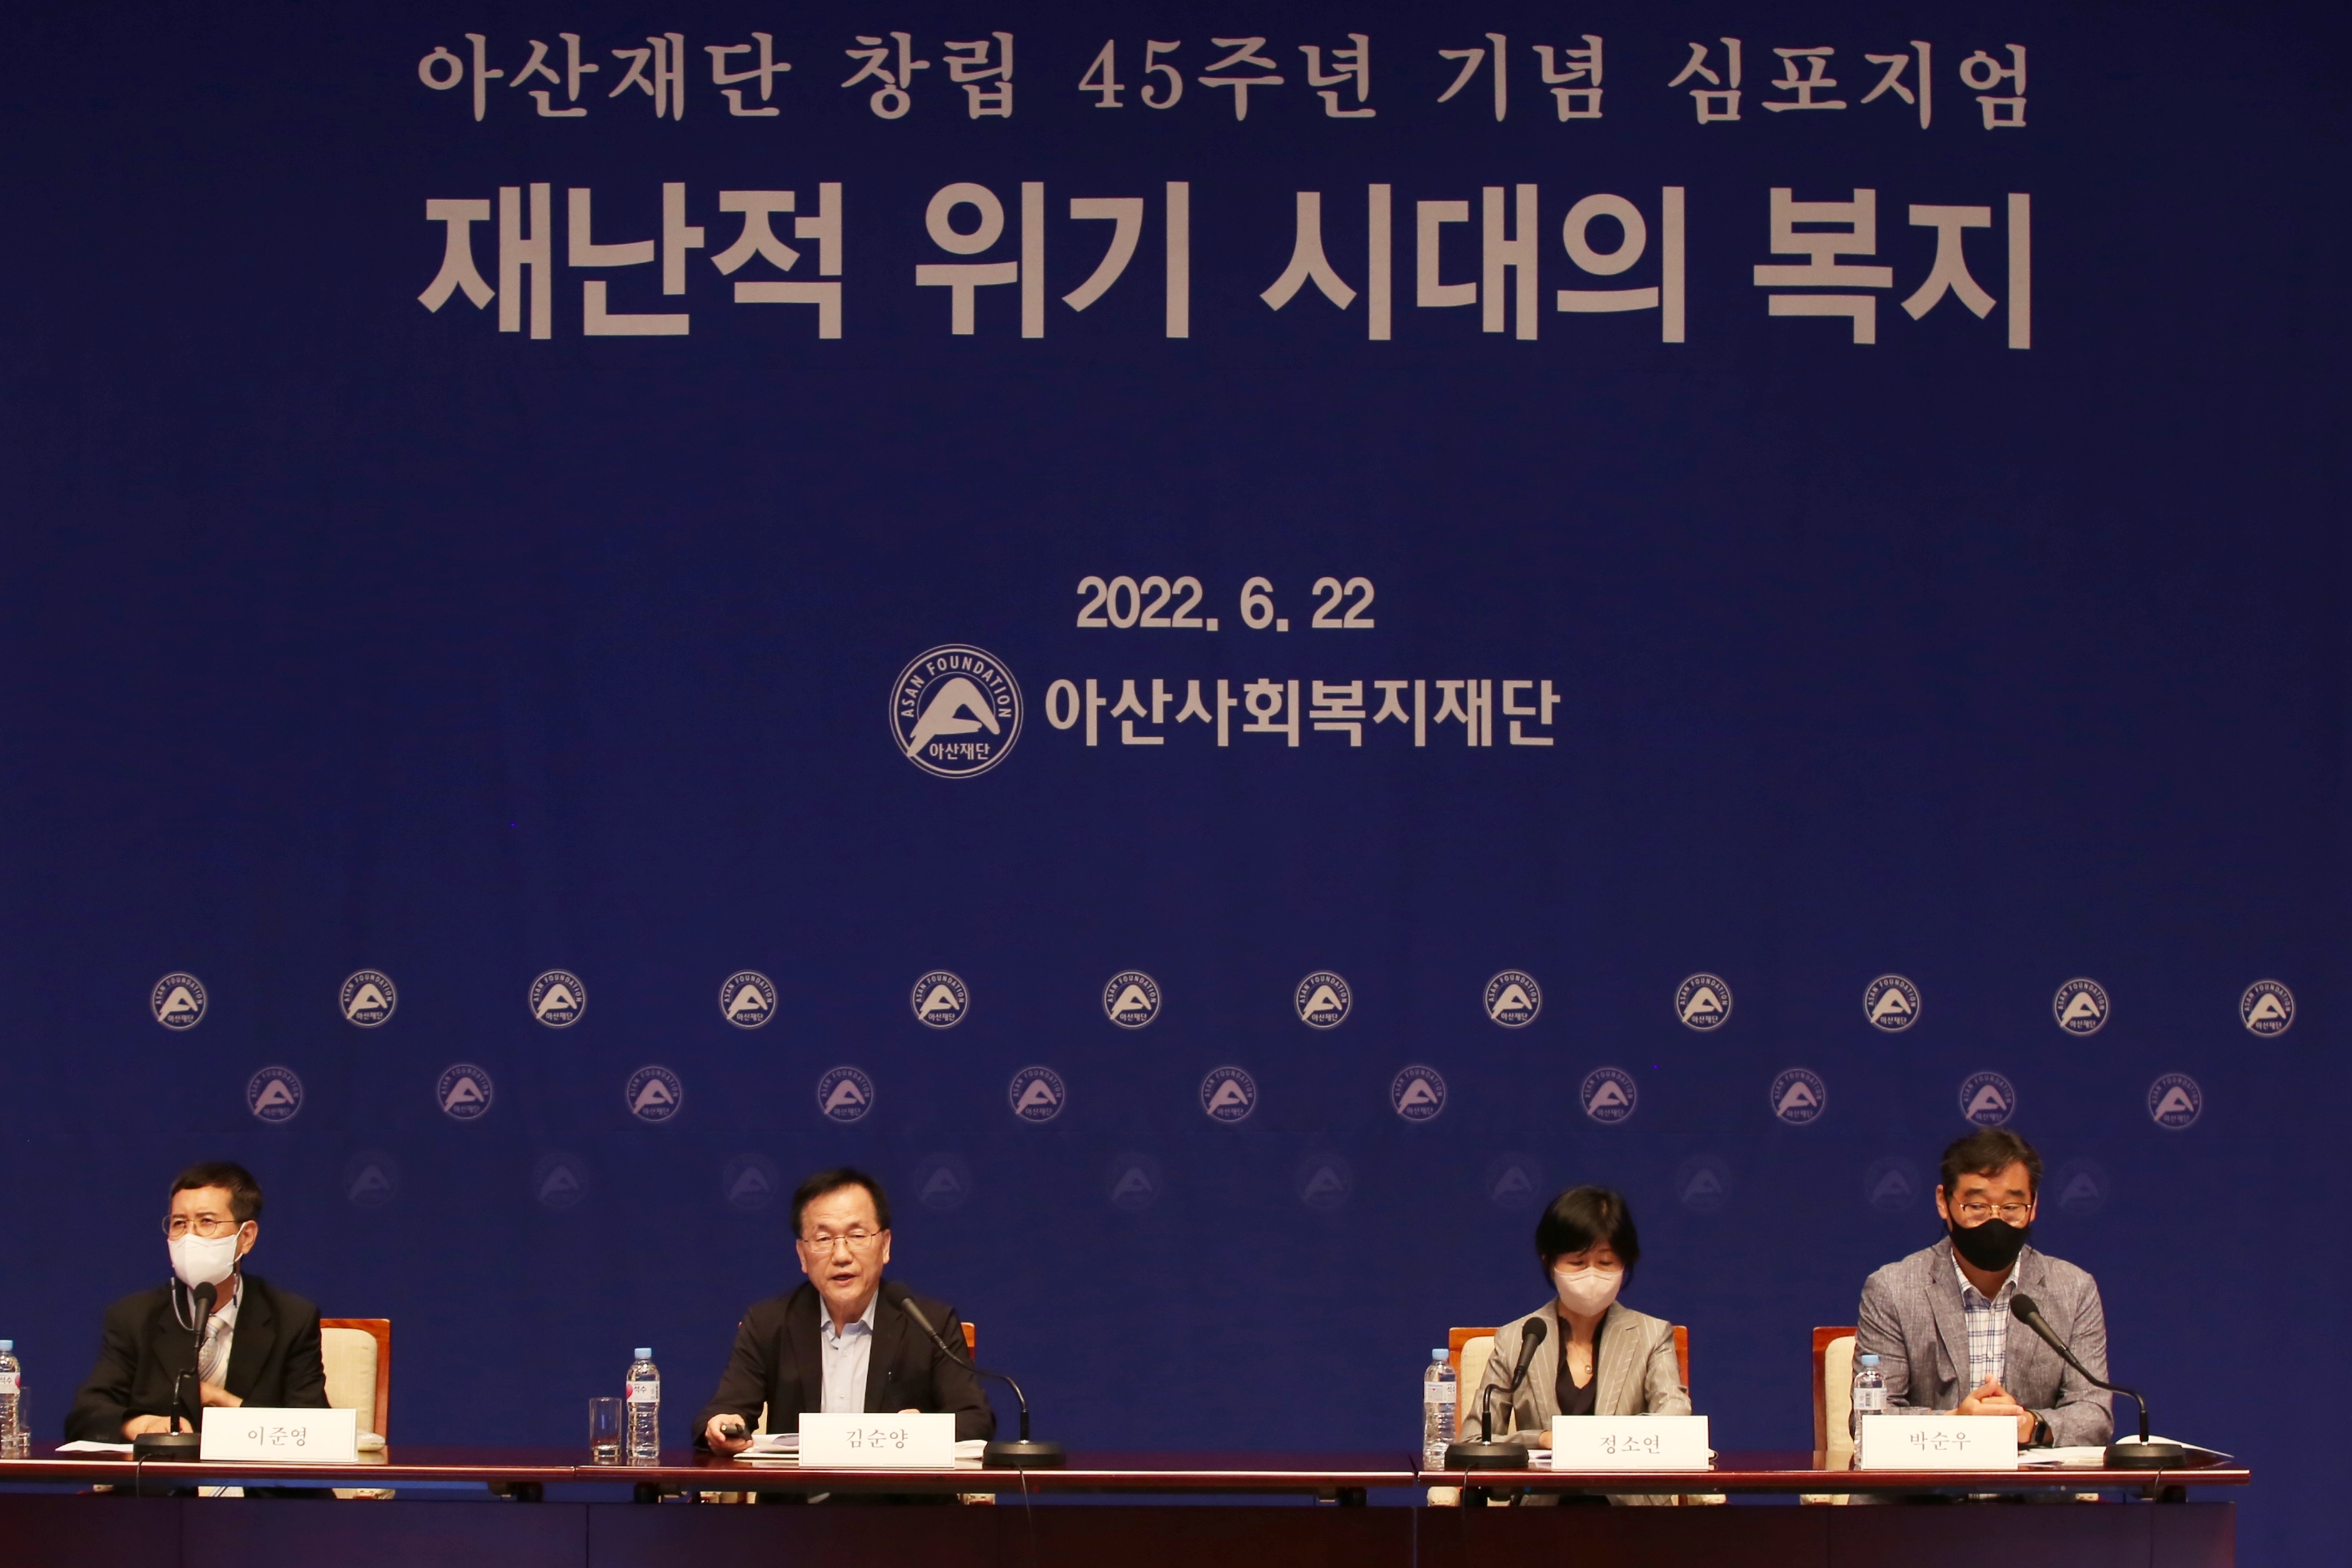 아산사회복지재단(이사장 정몽준)이 22일 한국프레스센터 국제회의장에서 학계와 관련 전문가를 초청해 ‘재난적 위기 시대의 복지’라는 주제로 학술 심포지엄을 개최했다.  아산사회복지재단 제공